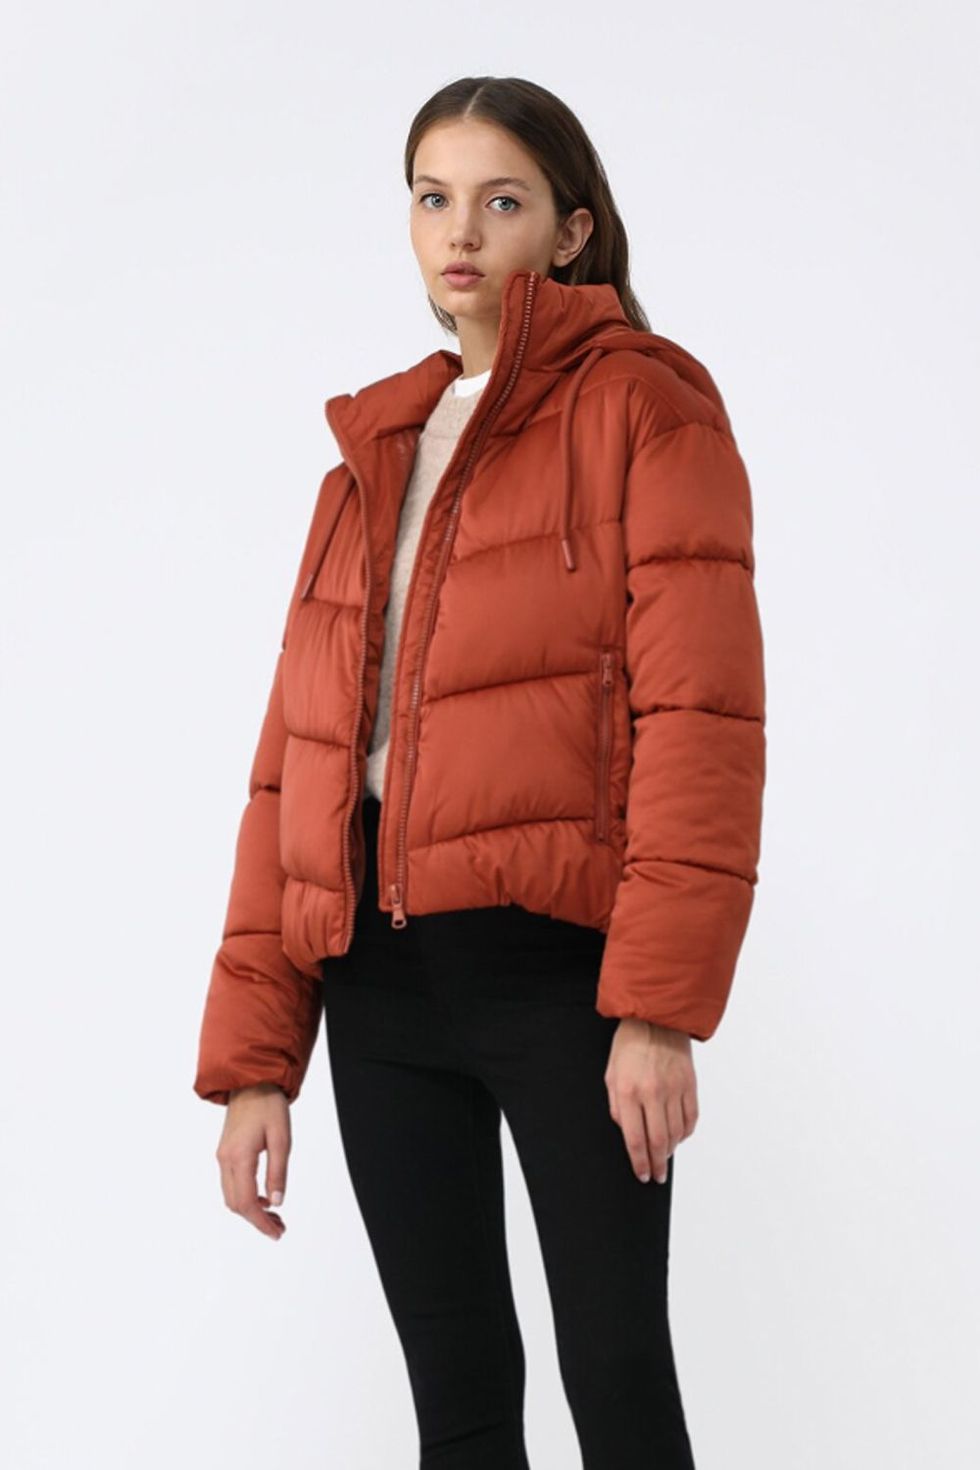 Ofertas en chaquetas de plumas y abrigos de marca otoño-invierno